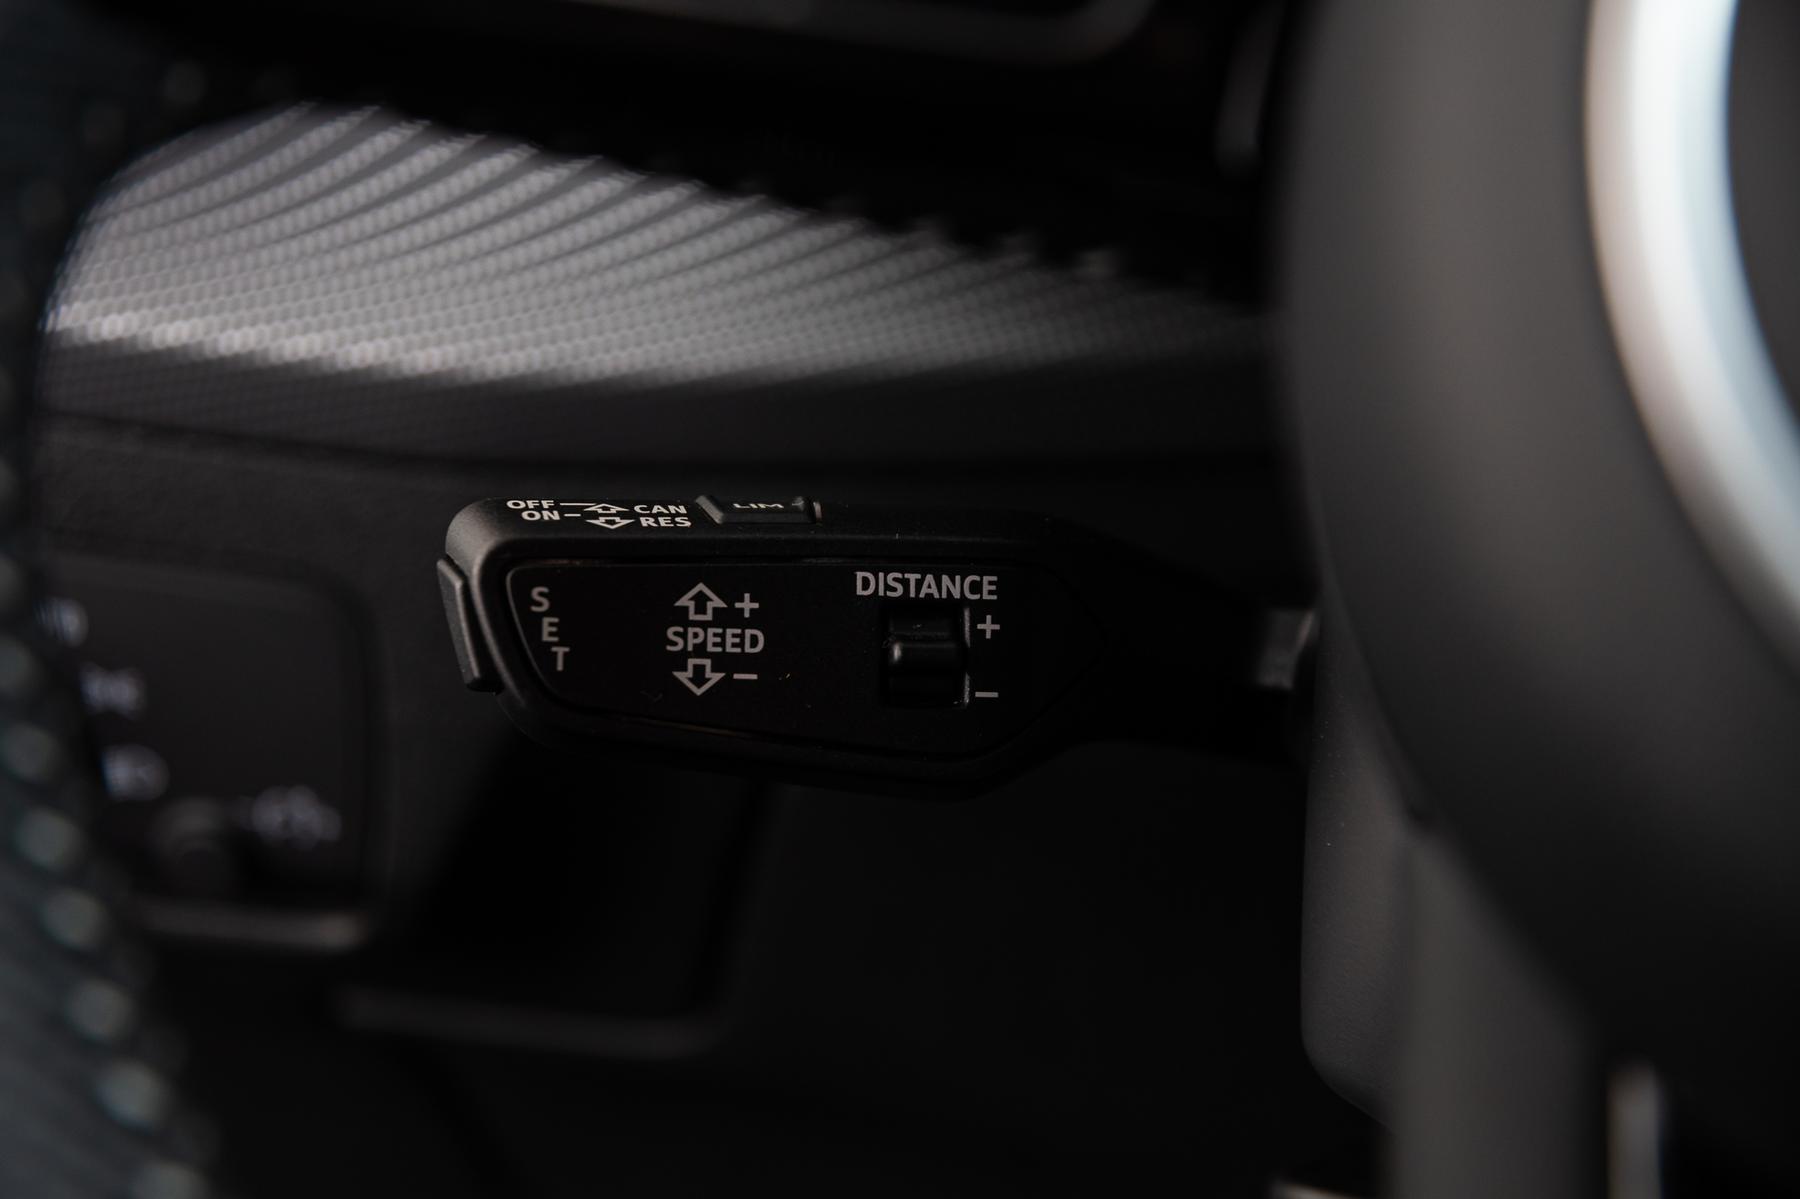 Audi adaptive cruise control